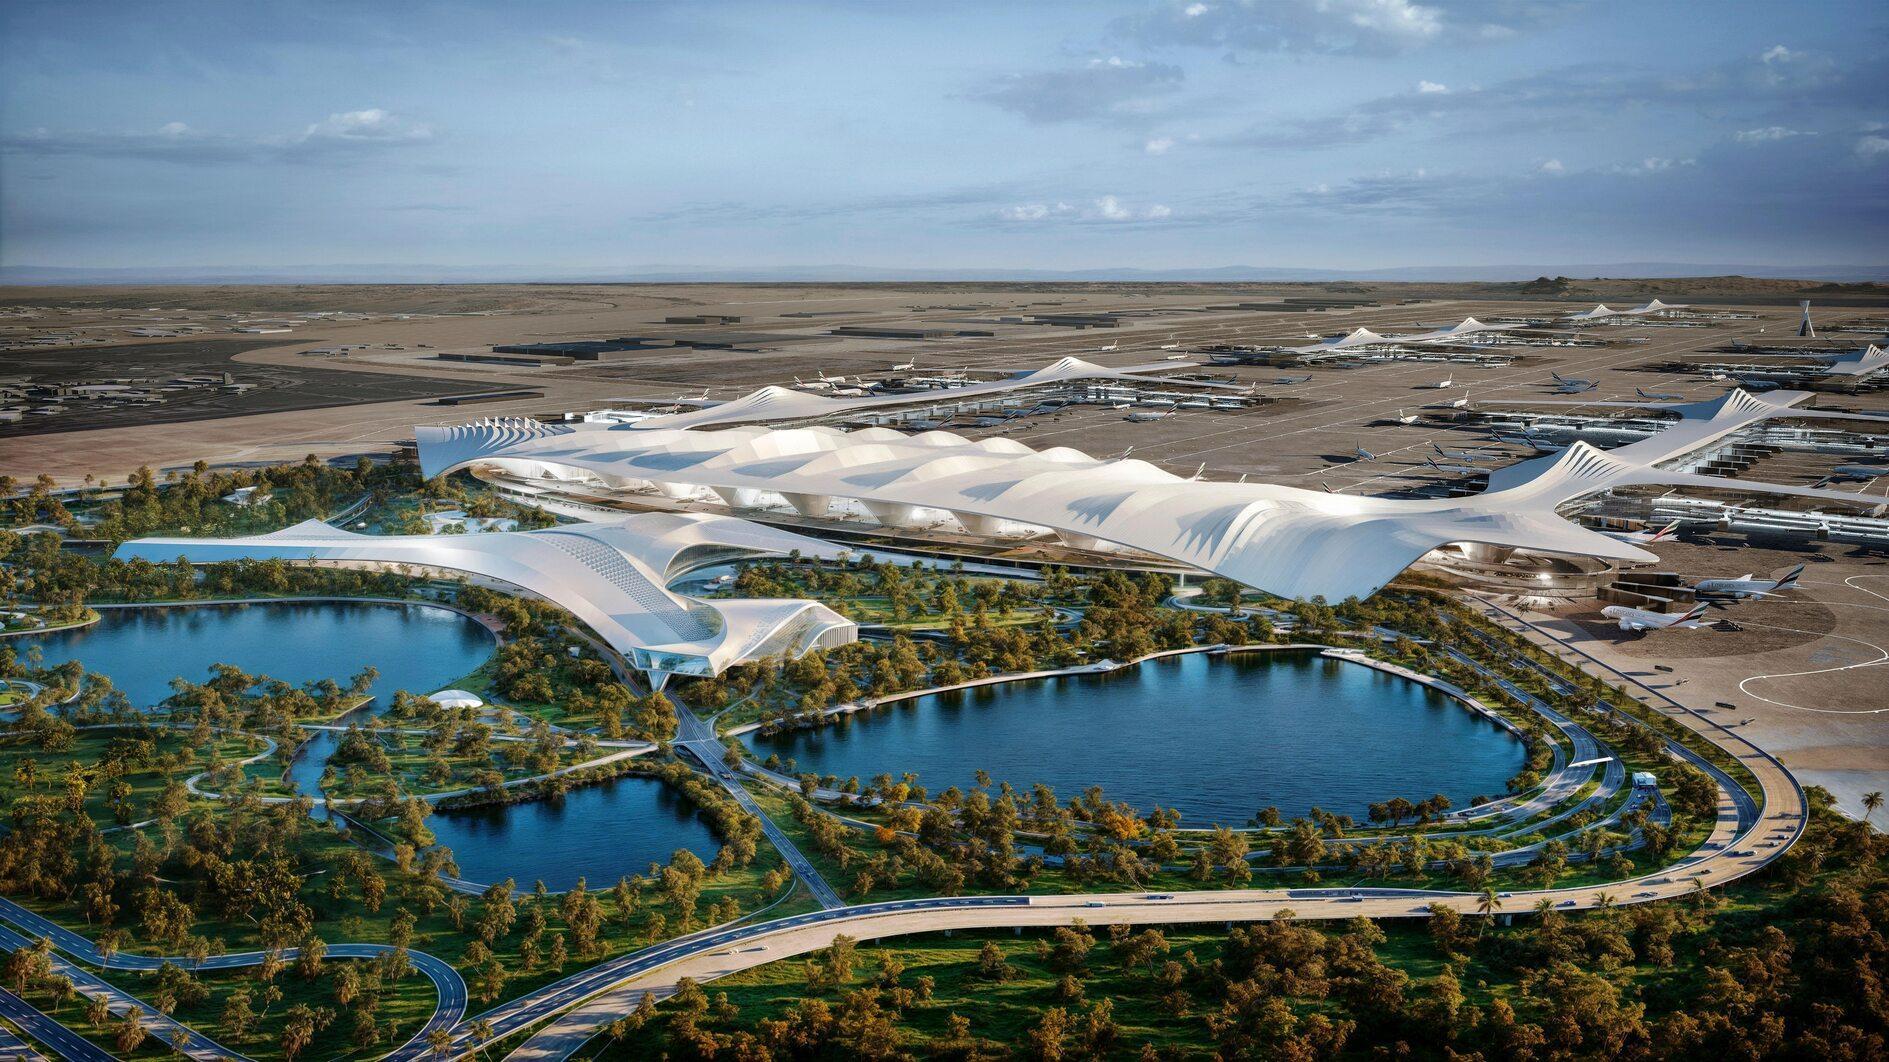 Dubai begint met de bouw van 's werelds grootste luchthaventerminal